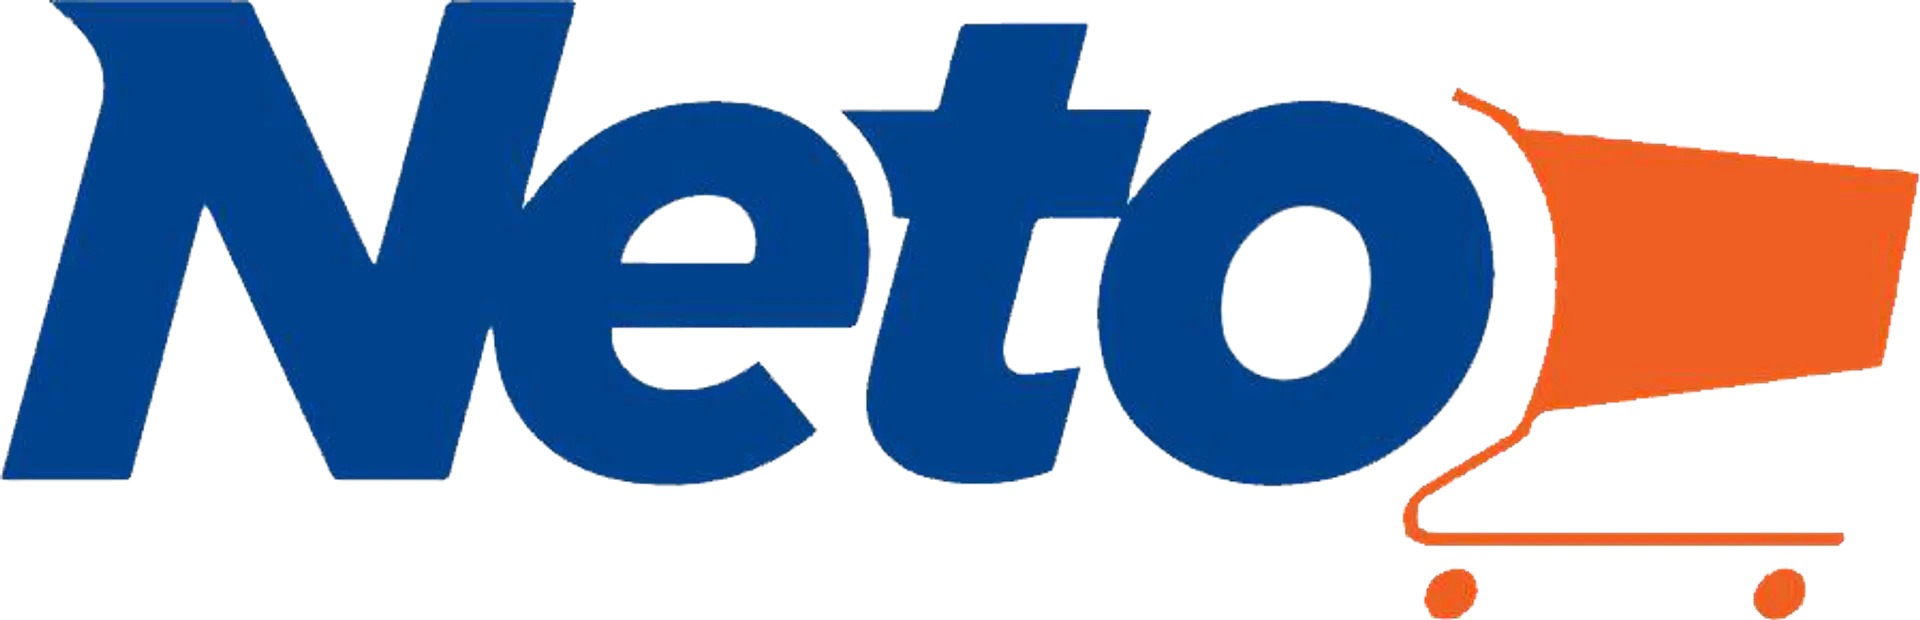 TIENDAS NETO logo